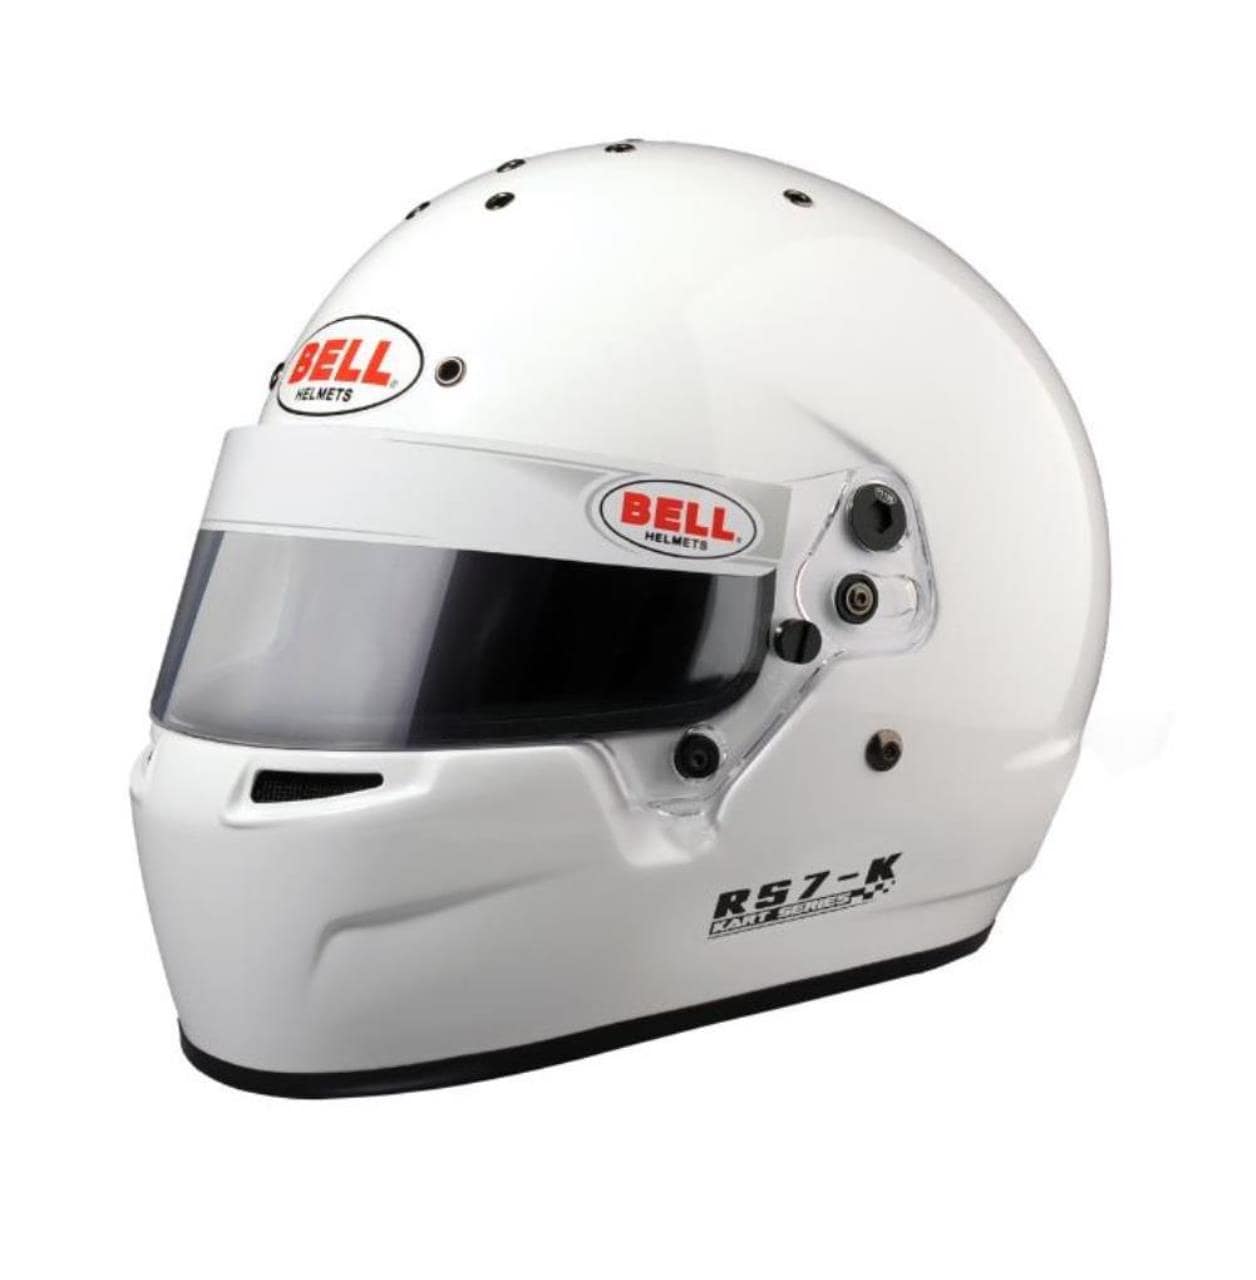 Karting-hjelm Bell-hjelm RS7-K